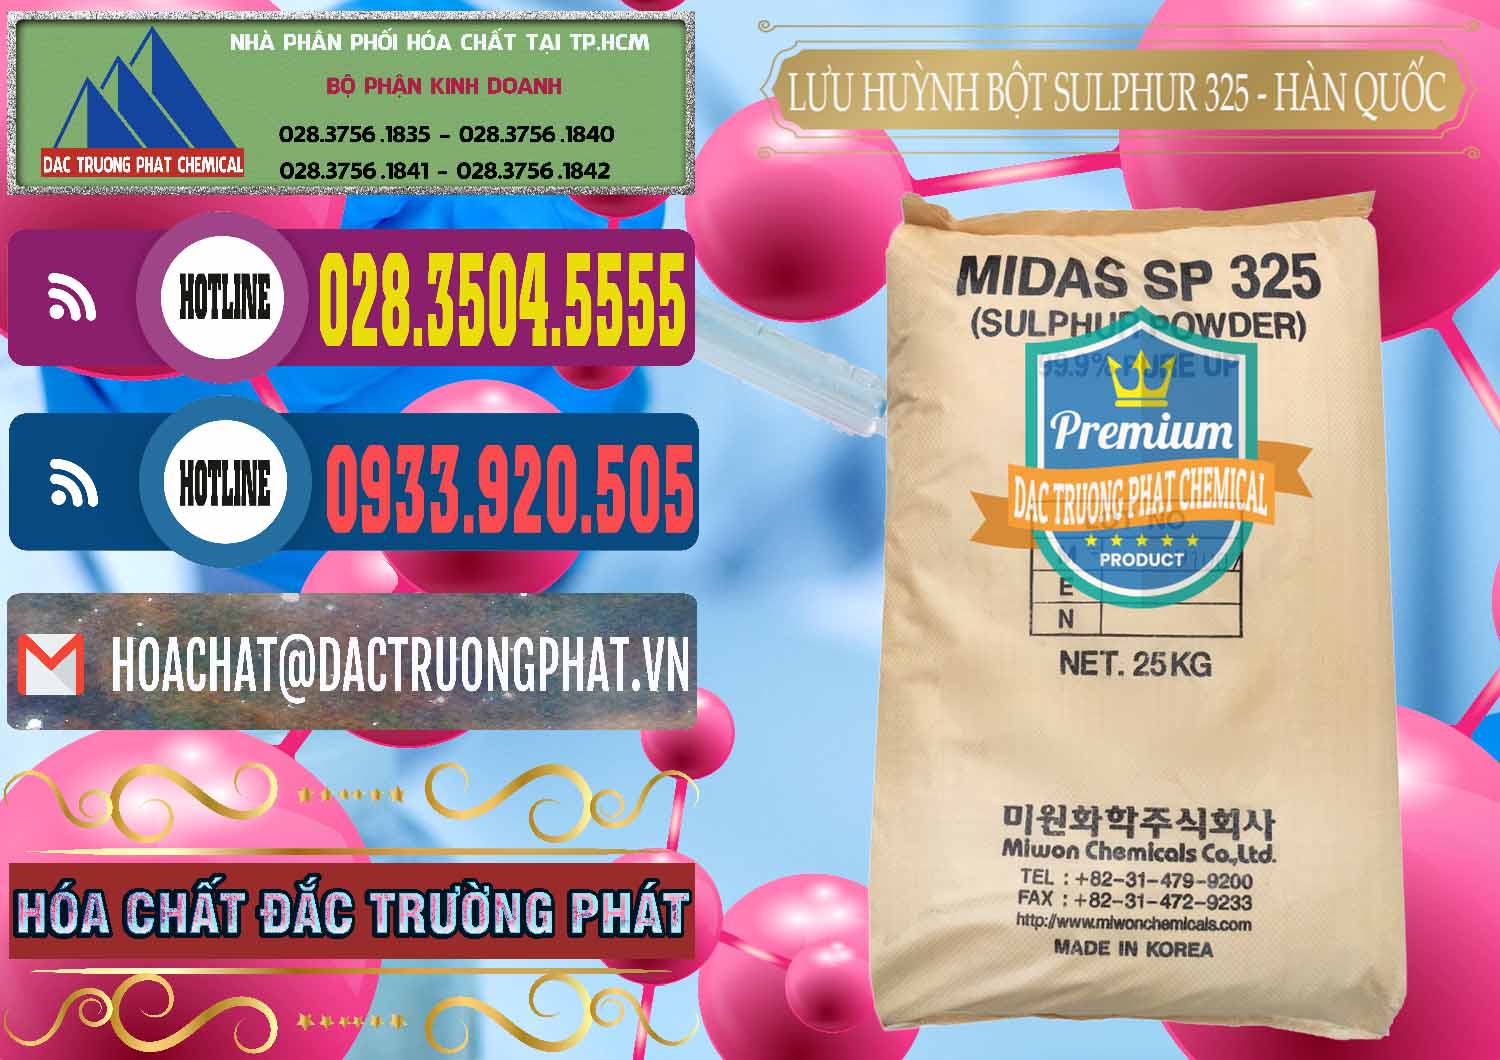 Công ty bán _ cung ứng Lưu huỳnh Bột - Sulfur Powder Midas SP 325 Hàn Quốc Korea - 0198 - Nhà nhập khẩu _ phân phối hóa chất tại TP.HCM - muabanhoachat.com.vn